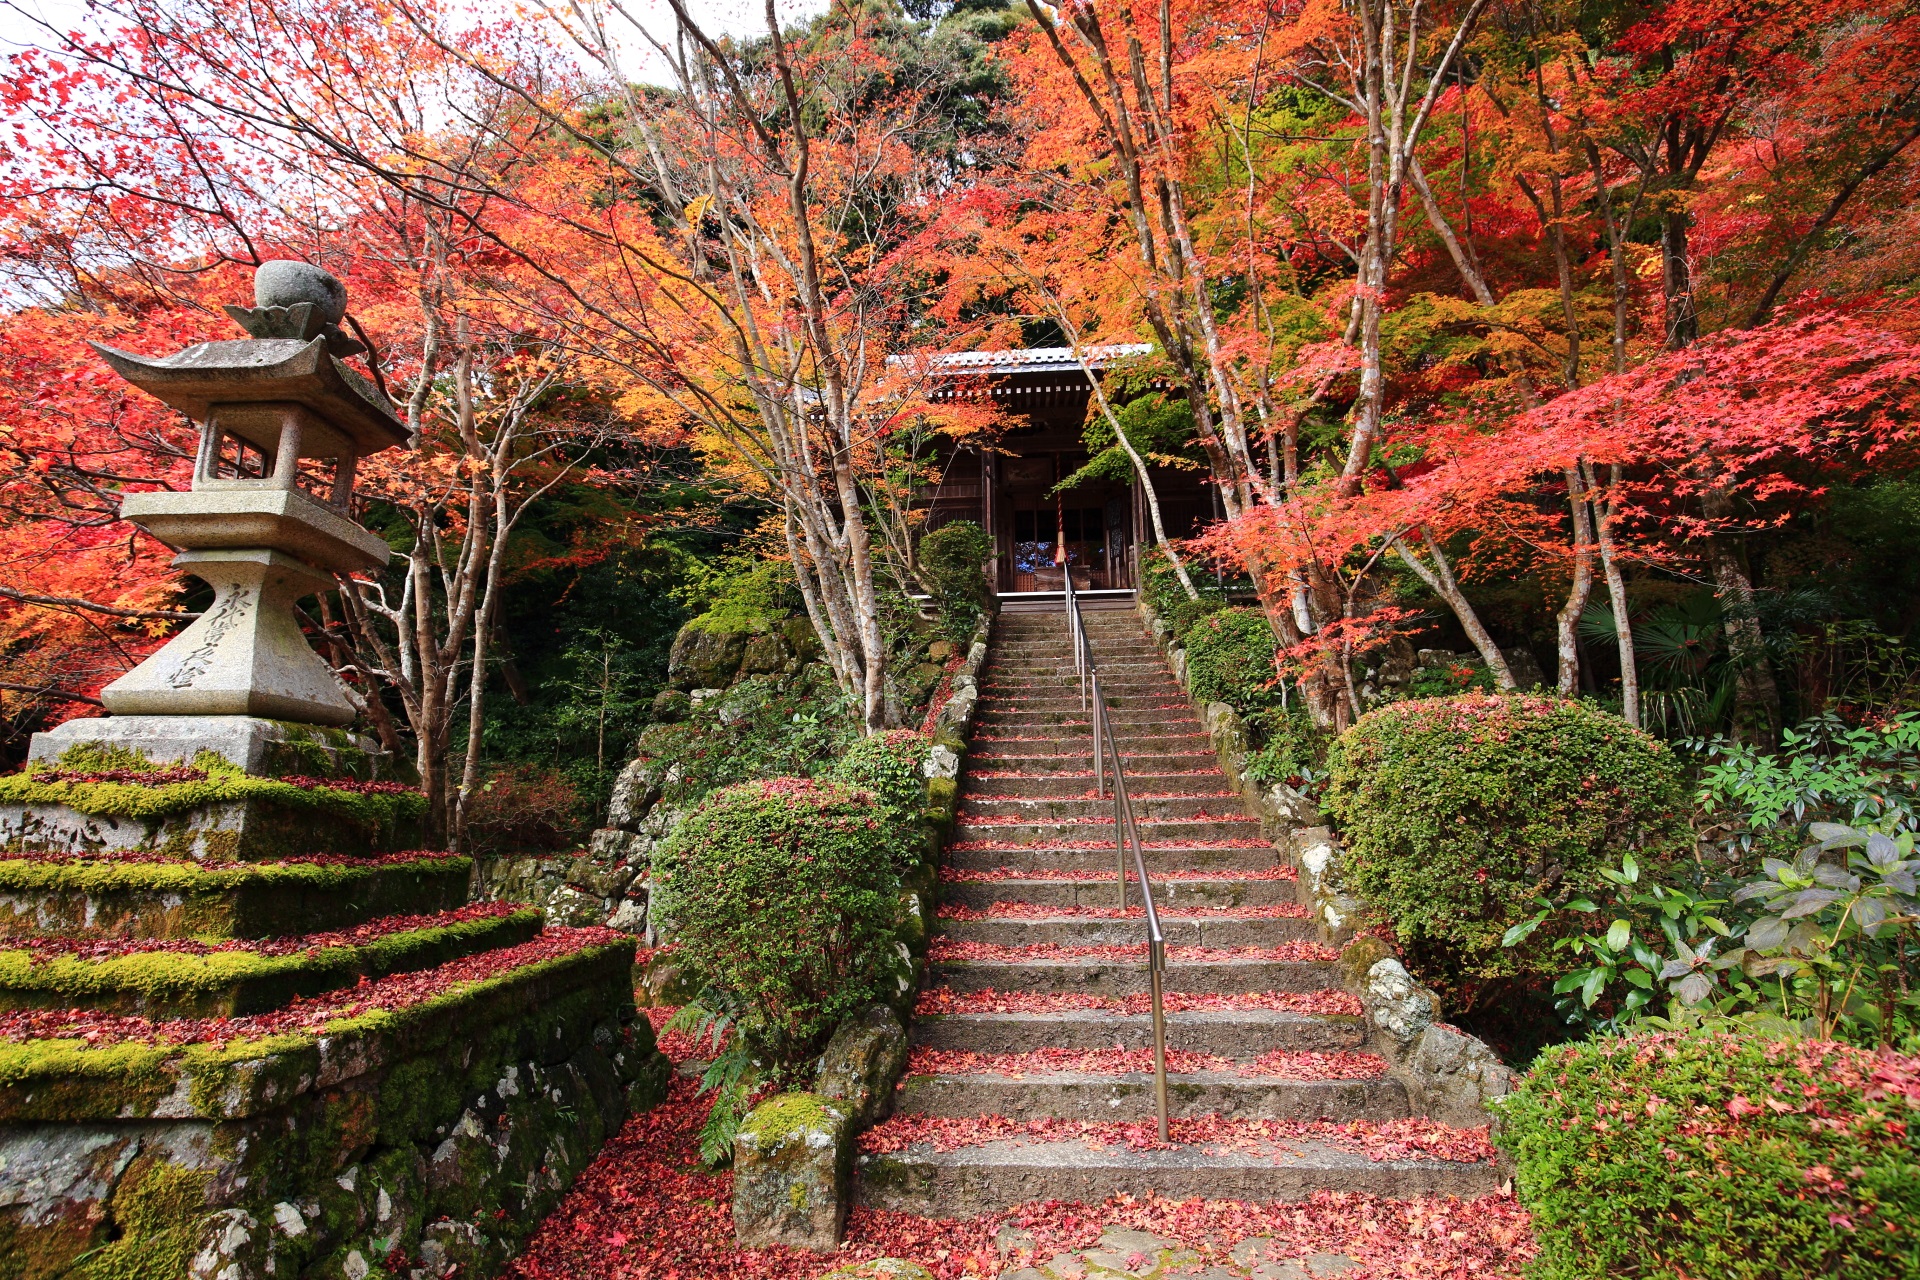 勝持寺の不動堂と紅葉の情緒ある秋色の空間